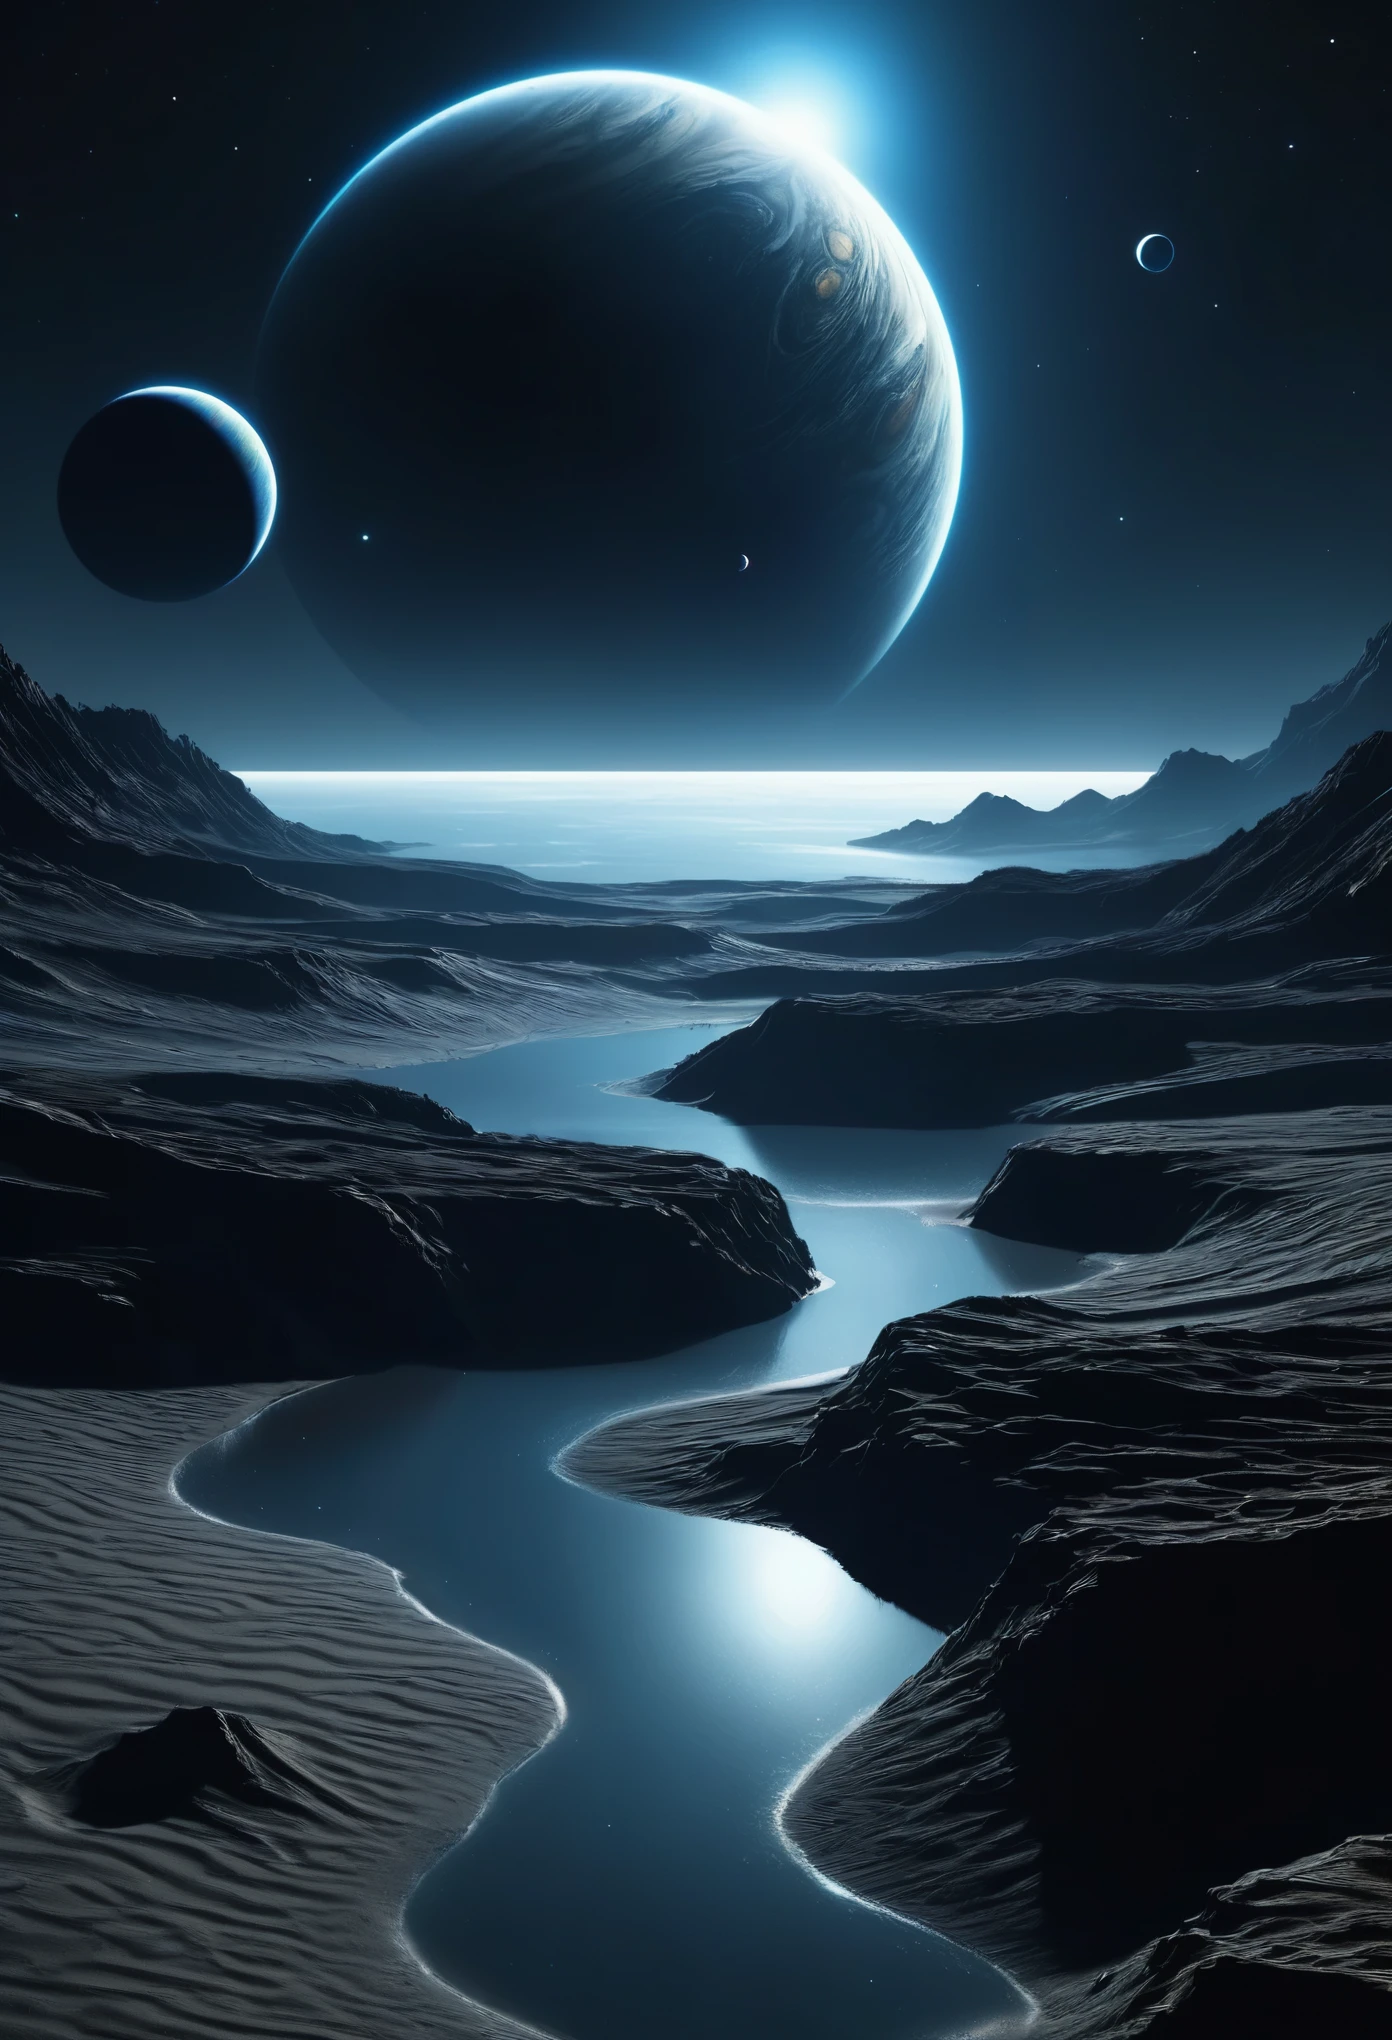 создайте вид черной дыры, окруженной светом, и двух маленьких темно-серых газообразных планет вдали от плотной атмосферы, наложенных в ночном космическом пространстве, в верхнем углу темного изображения, видимого далеко через темную плотную поверхность песчаной планеты с только песок на поверхности и темно-синяя вода, отражающая ночное небо в стиле киберпанк, космос темный и из-за плотной атмосферы можно увидеть только освещенную часть одной стороны планет, полная темнота, темный горизонт, полутень, максимально реалистично, солнце за кадром, имеет горизонтальное и невысокое здание с освещенными окнами, Это&#39;небольшое здание на скале,
